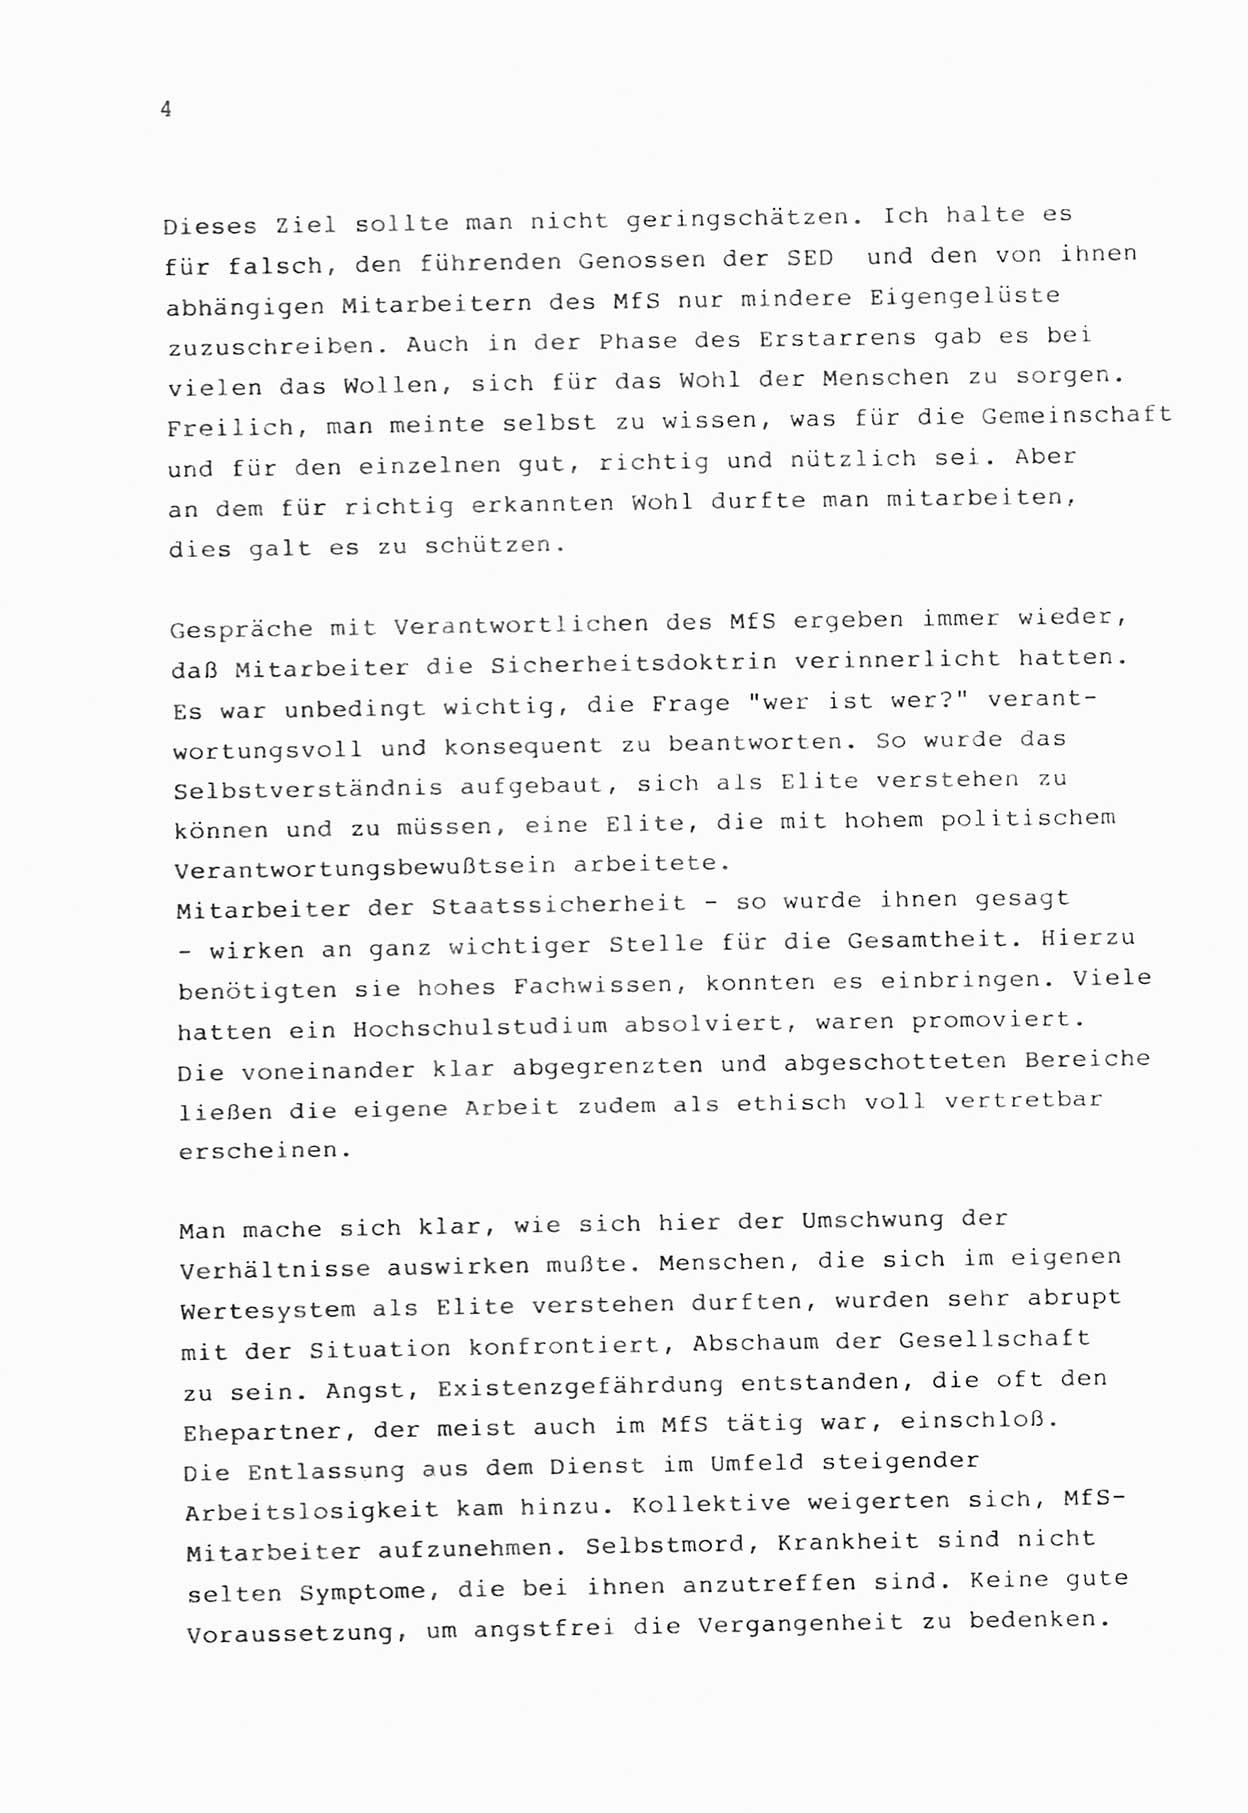 Zwie-Gespräch, Beiträge zur Bewältigung der Stasi-Vergangenheit [Deutsche Demokratische Republik (DDR)], Ausgabe Nr. 1, Berlin 1991, Seite 4 (Zwie-Gespr. Ausg. 1 1991, S. 4)